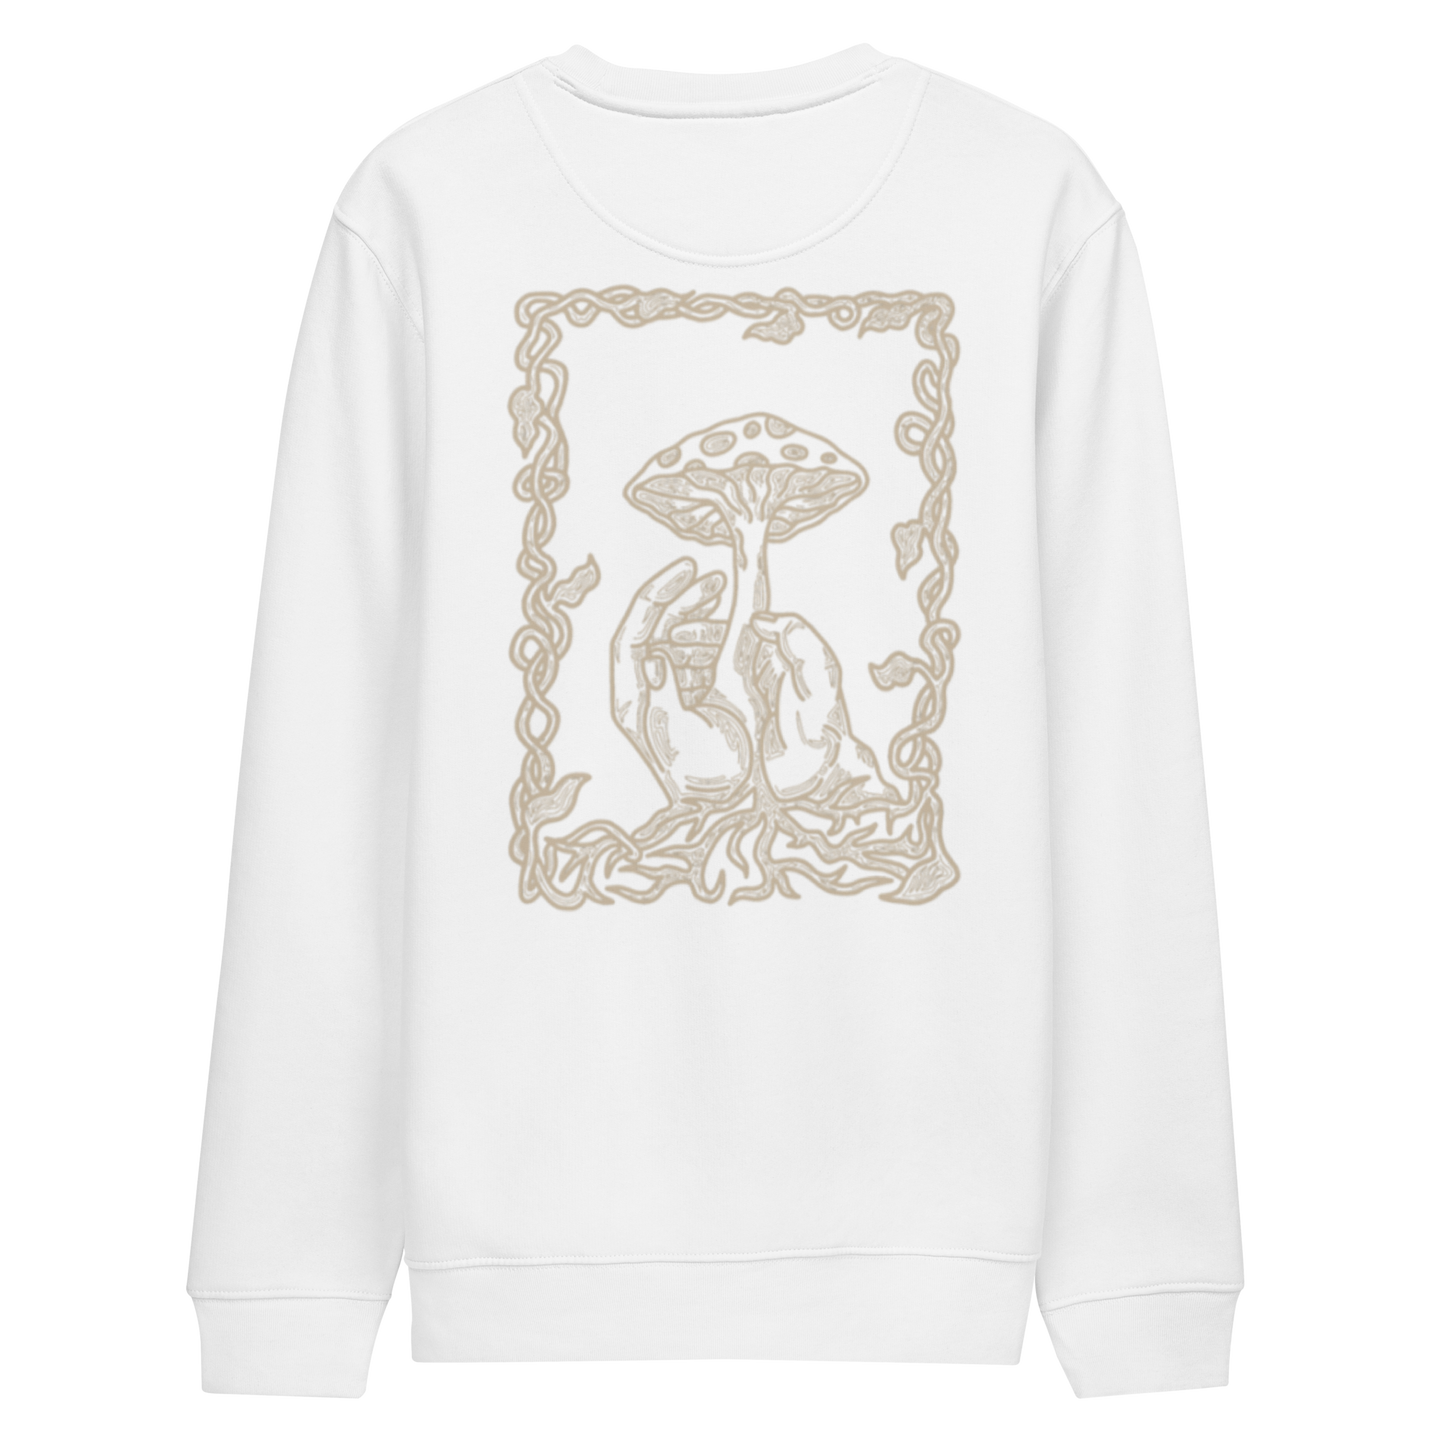 Karleth Mushroom Unisex Sweatshirt - White/Sand